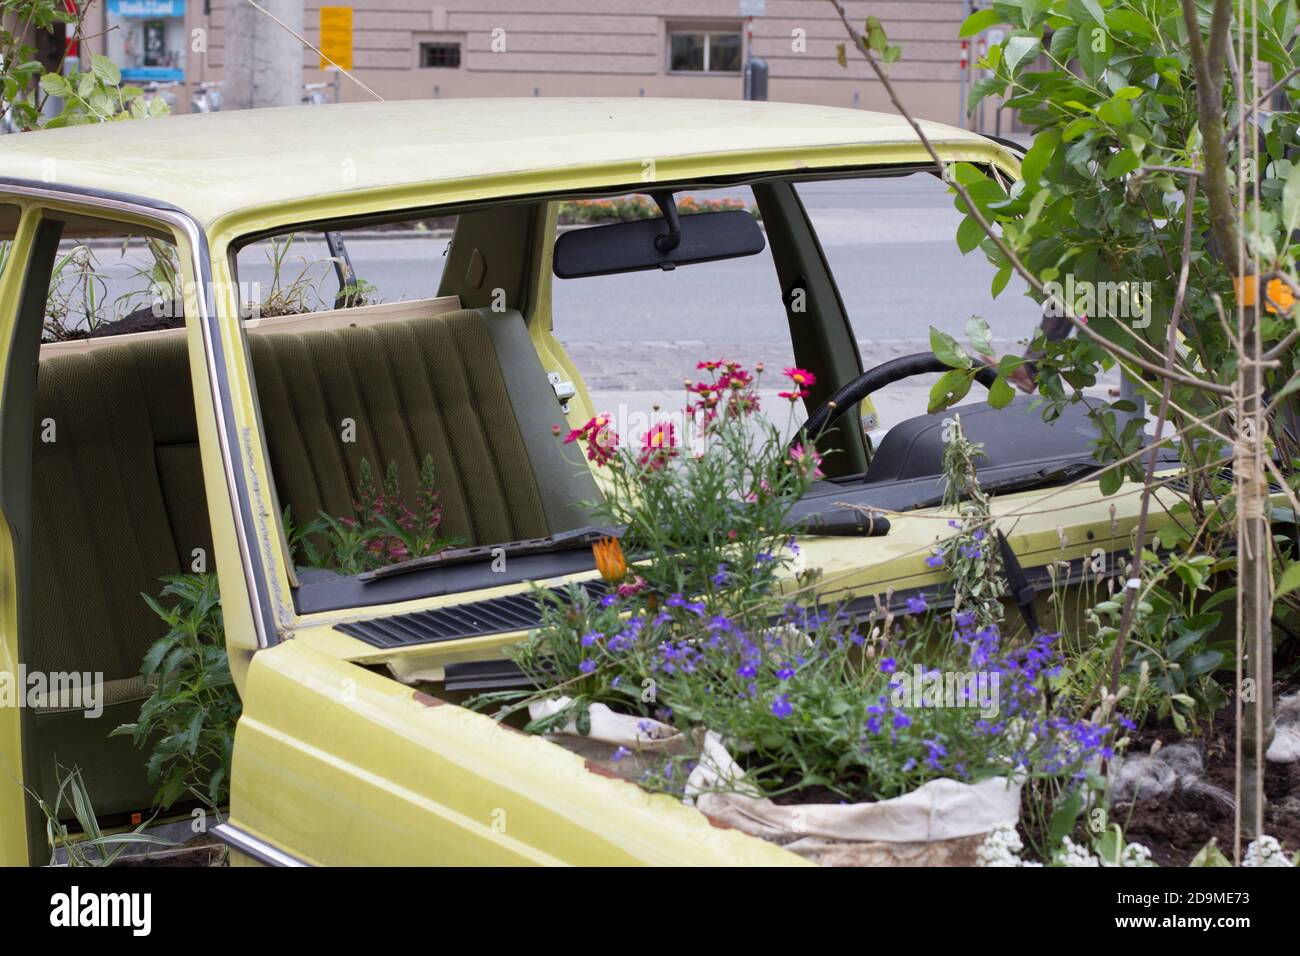 Urban Gardening, alte Autos, in denen es blüht und wächst. Stockfoto